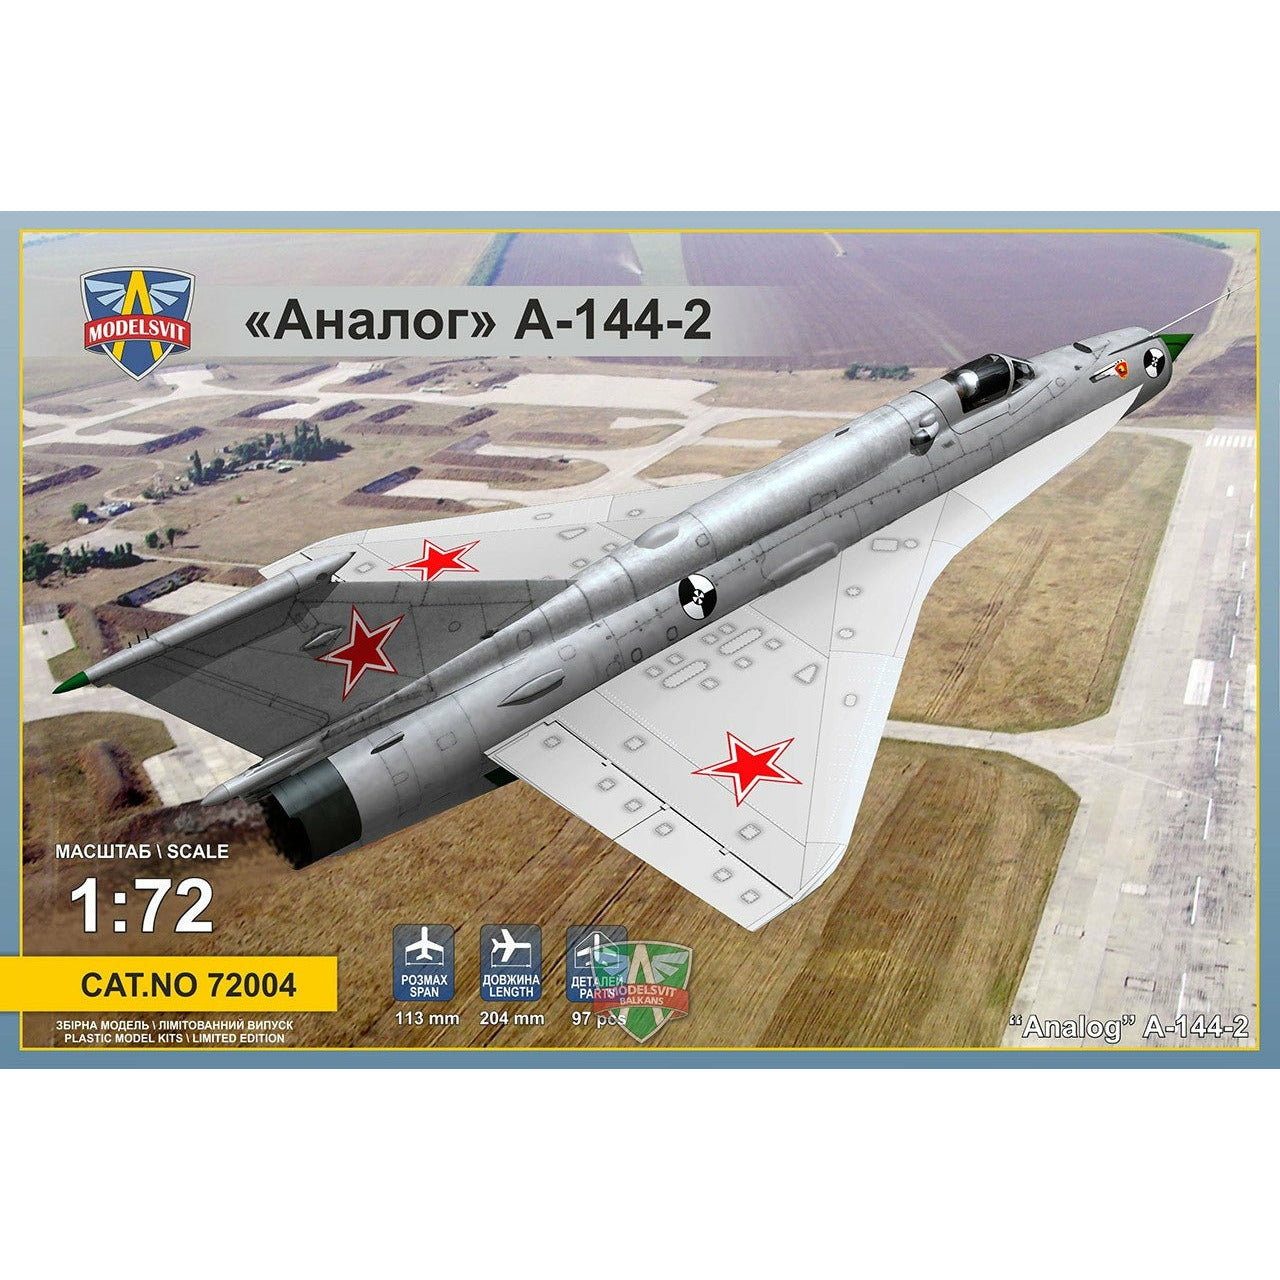 Analog A-144-2 (MiG21I-2) 1/72 #72004 by Modelsvit